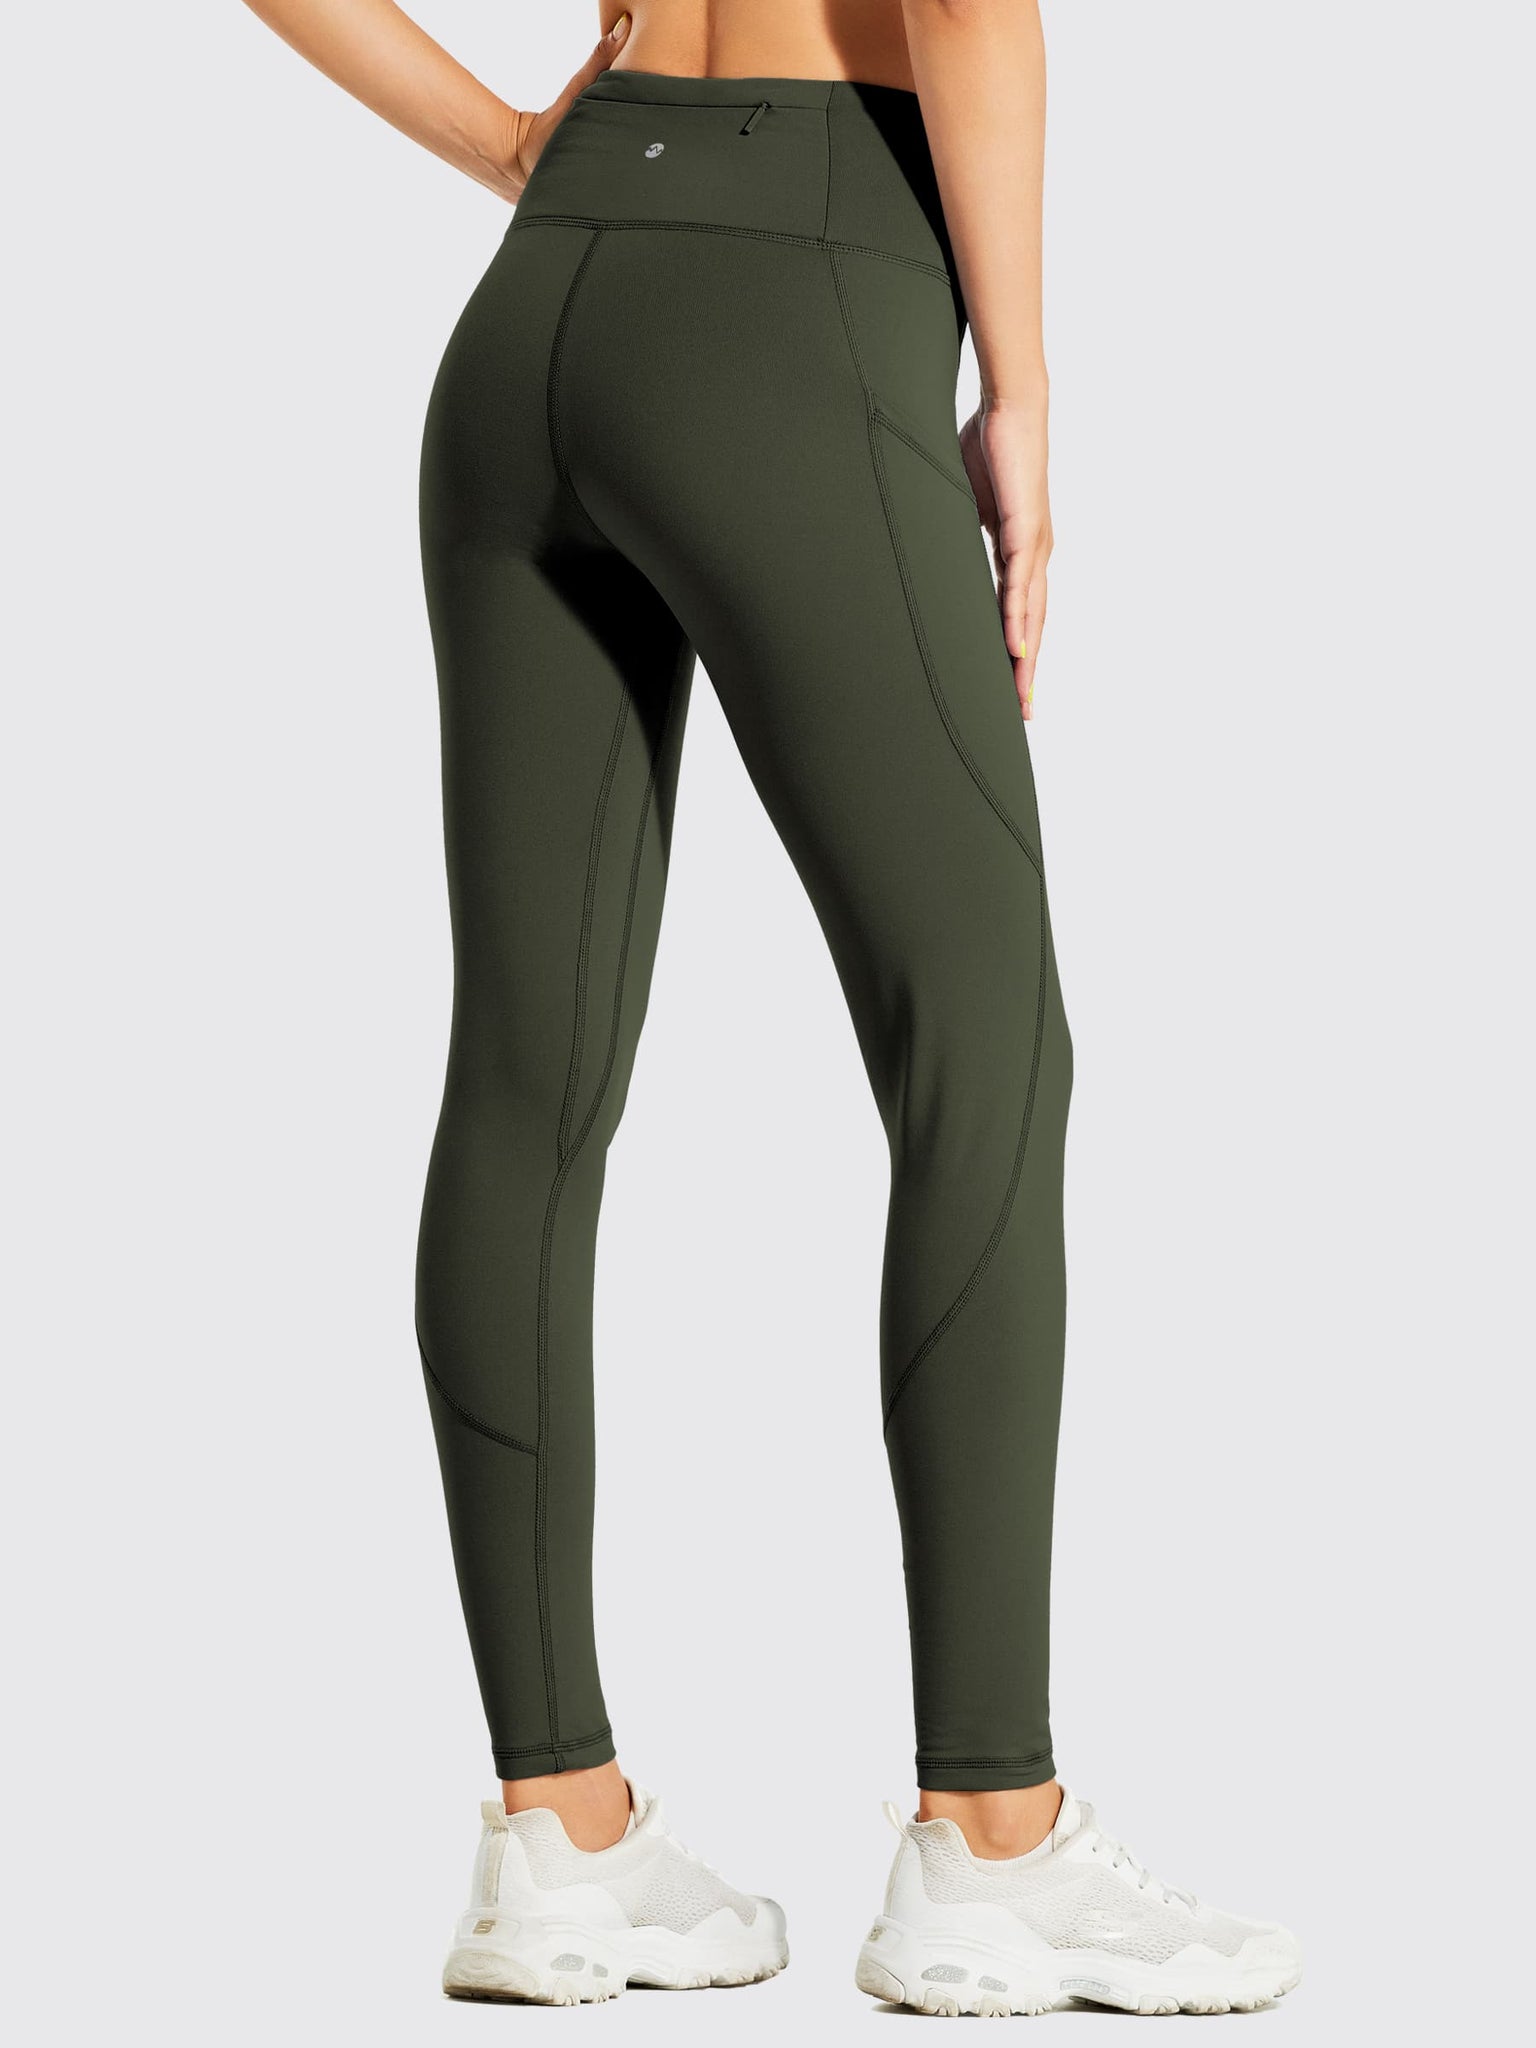 Women's Fleece Lined Leggings_Green_model3